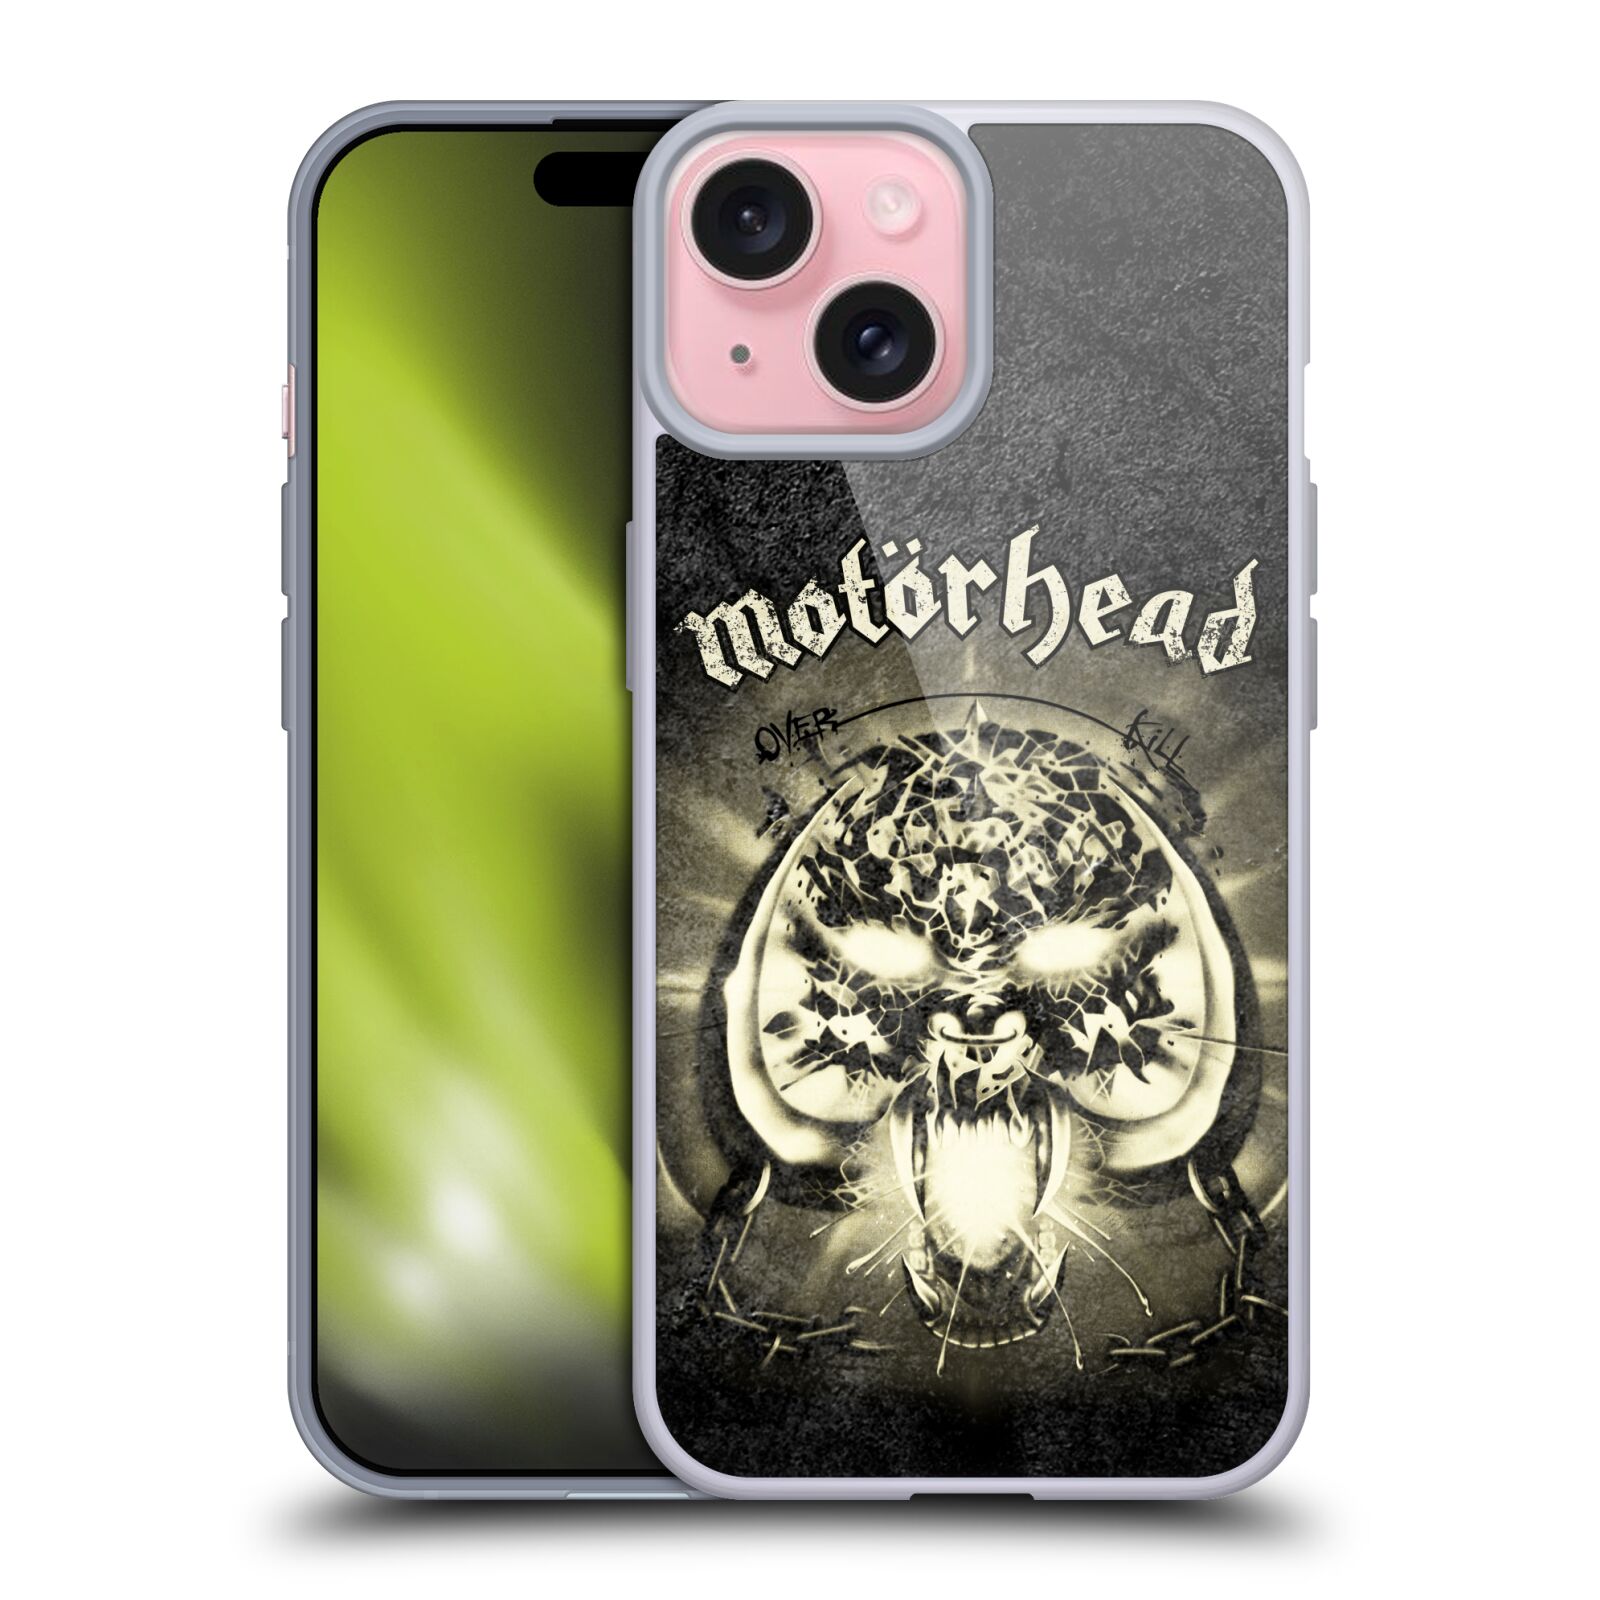 Silikonové lesklé pouzdro na mobil Apple iPhone 15 - Motörhead - Overkill (Silikonový lesklý kryt, obal, pouzdro na mobilní telefon Apple iPhone 15 s licencovaným motivem Motörhead - Overkill)